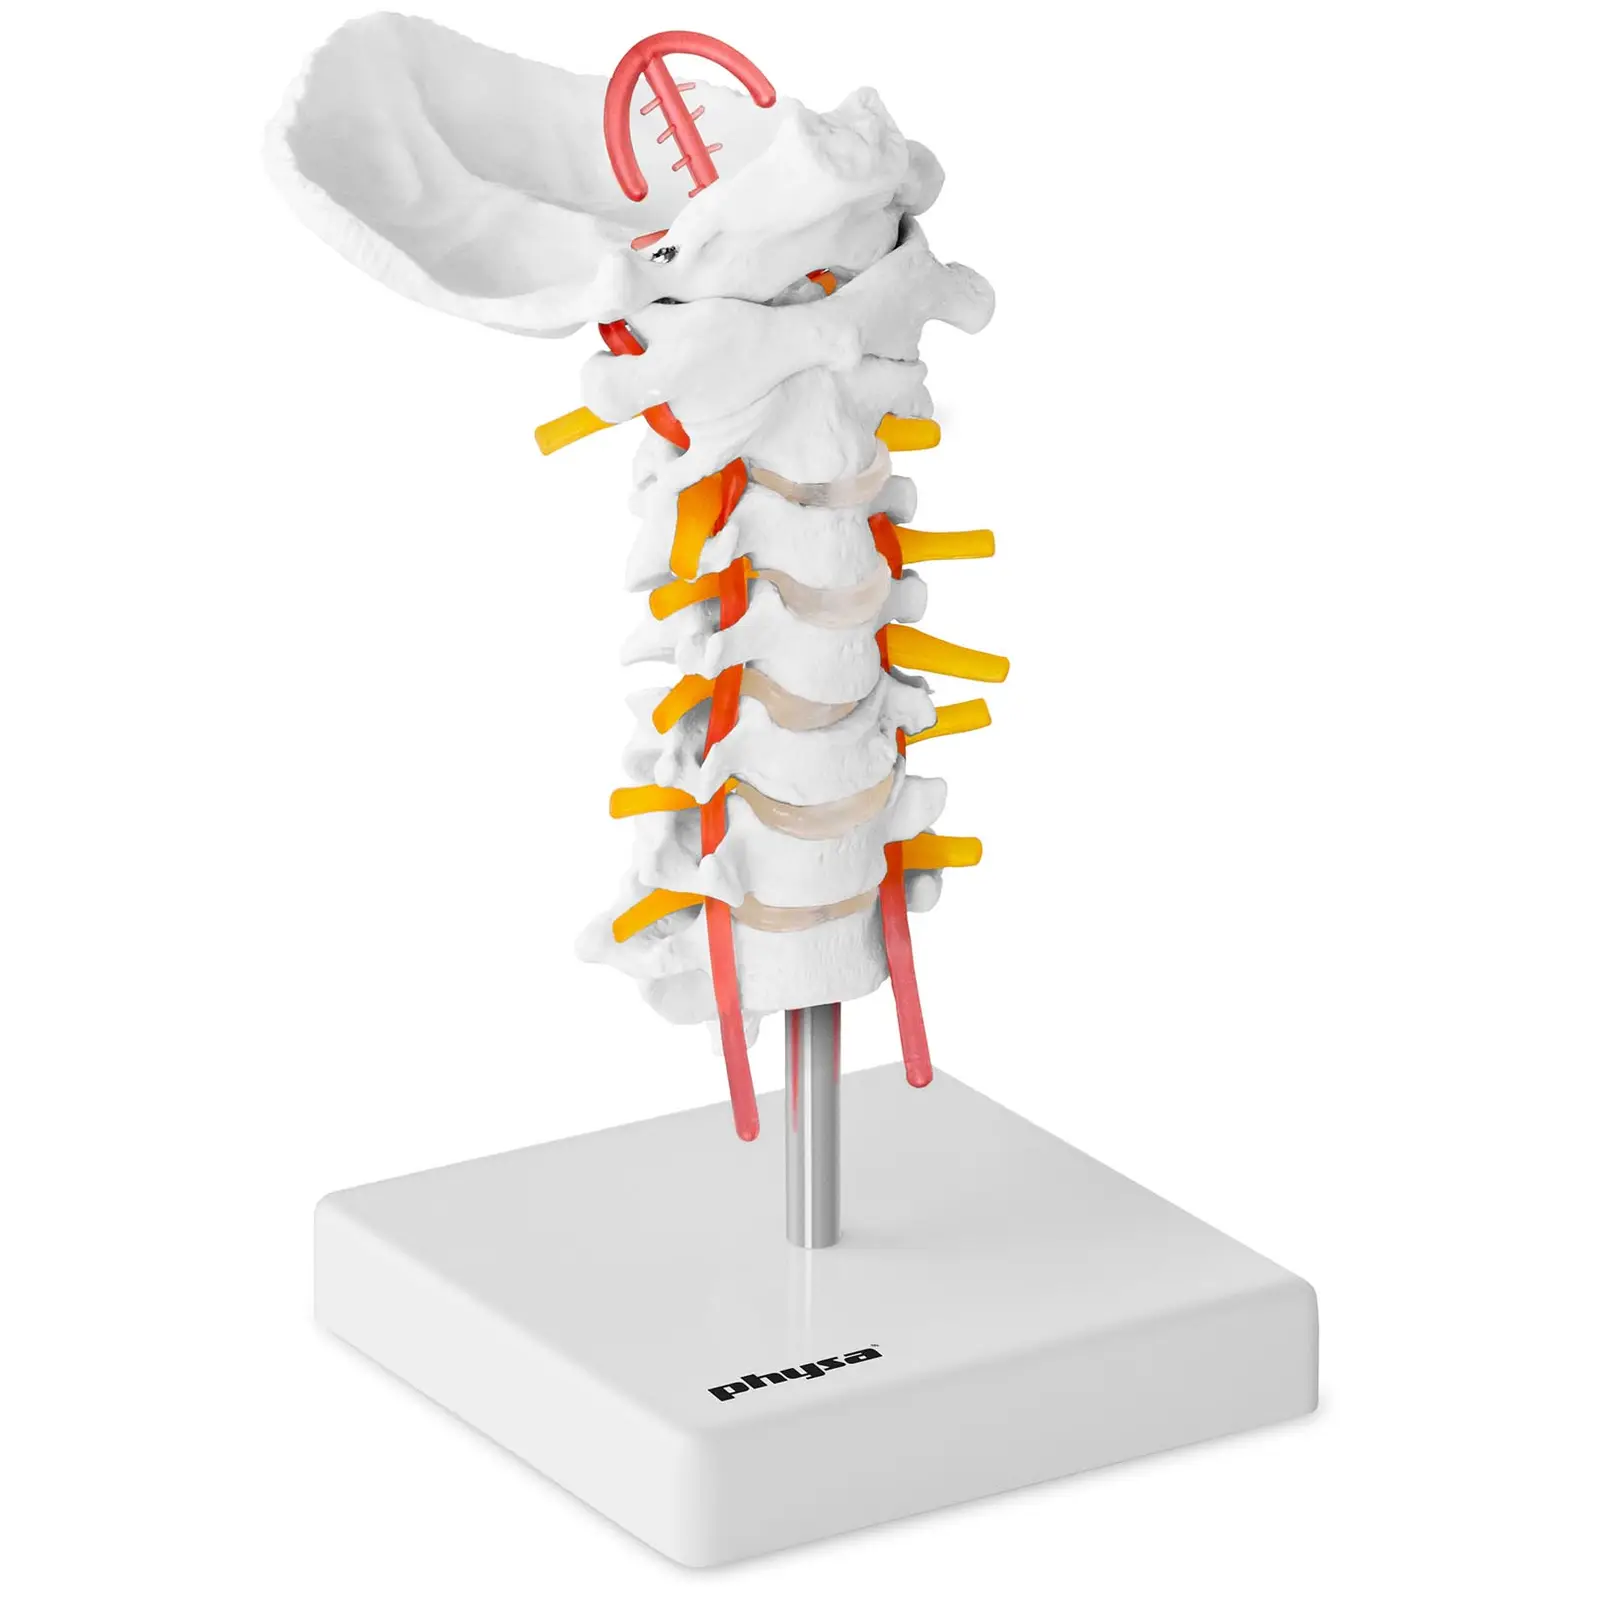 Model de coloană vertebrală cervicală - la scară naturală